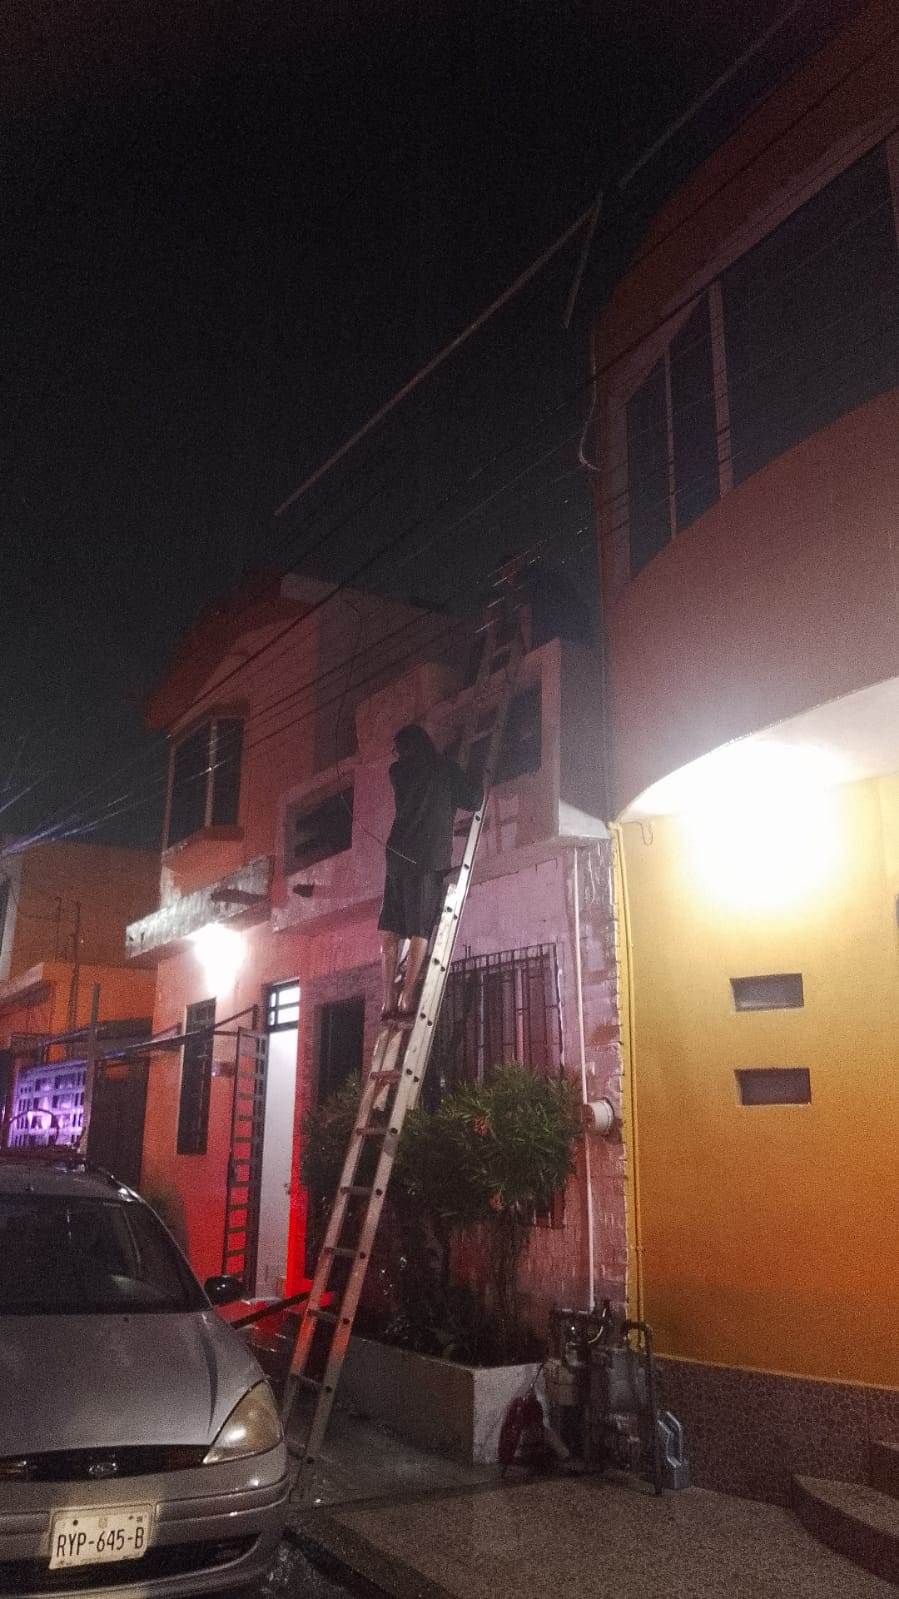 Dos recámaras y un baño de un domicilio se incendiaron en la Colonia Ancón del Huajuco, al oriente de Monterrey, sin que se reportaran lesionados.